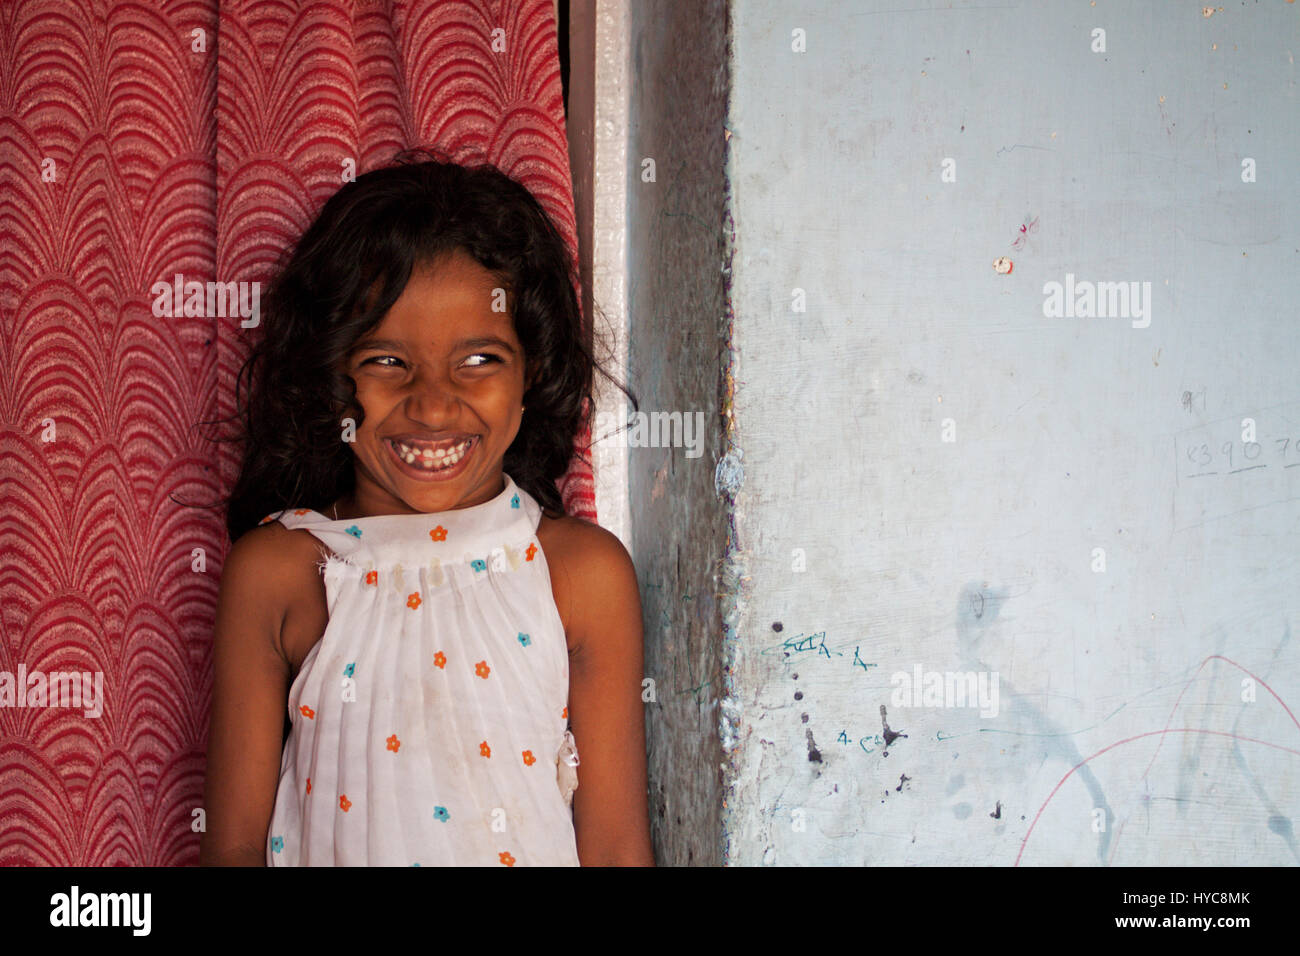 Portrait d'enfant, fille riant, enfant riant, Goa, Inde, Asie Banque D'Images